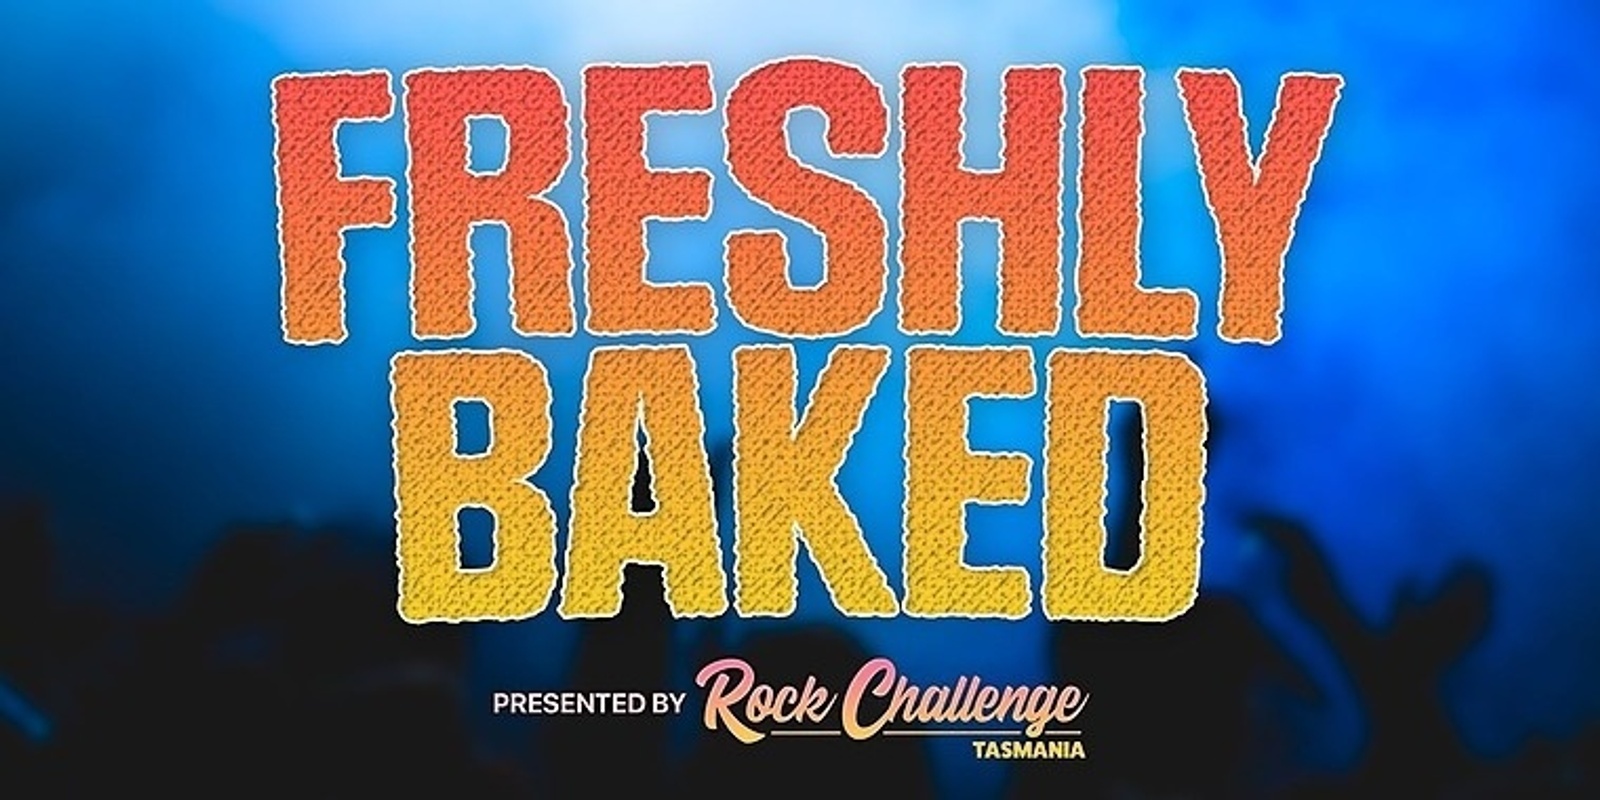 Banner image for Rock Challenge presents FRESHLY BAKED